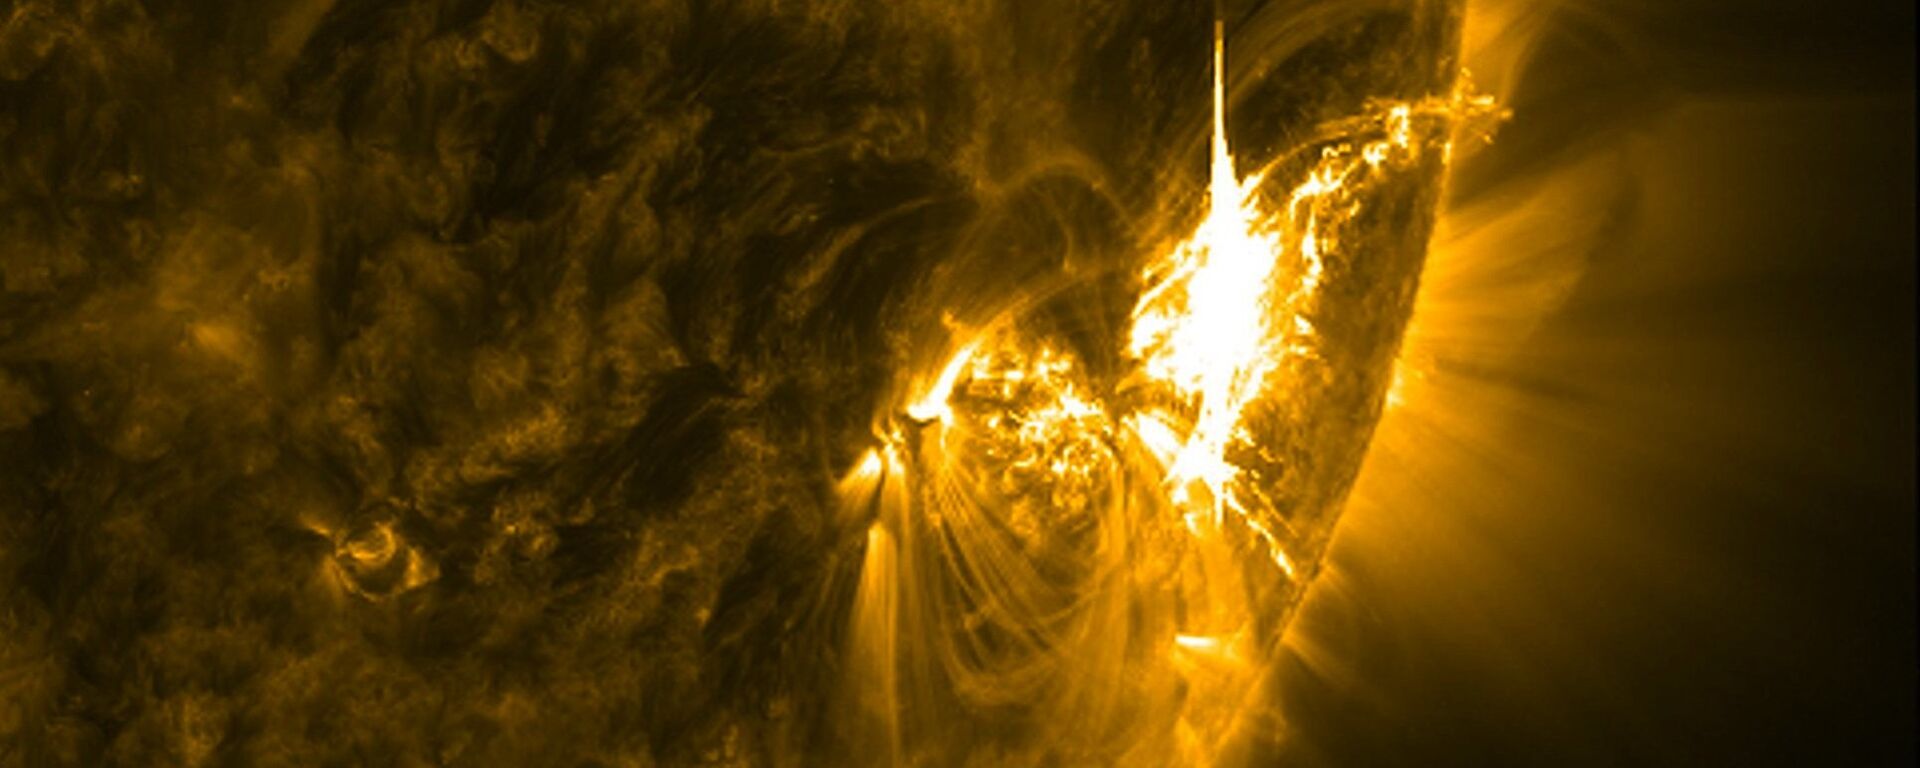 გეომაგნიტური ქარიშხალი მზეზე - Sputnik საქართველო, 1920, 17.04.2018